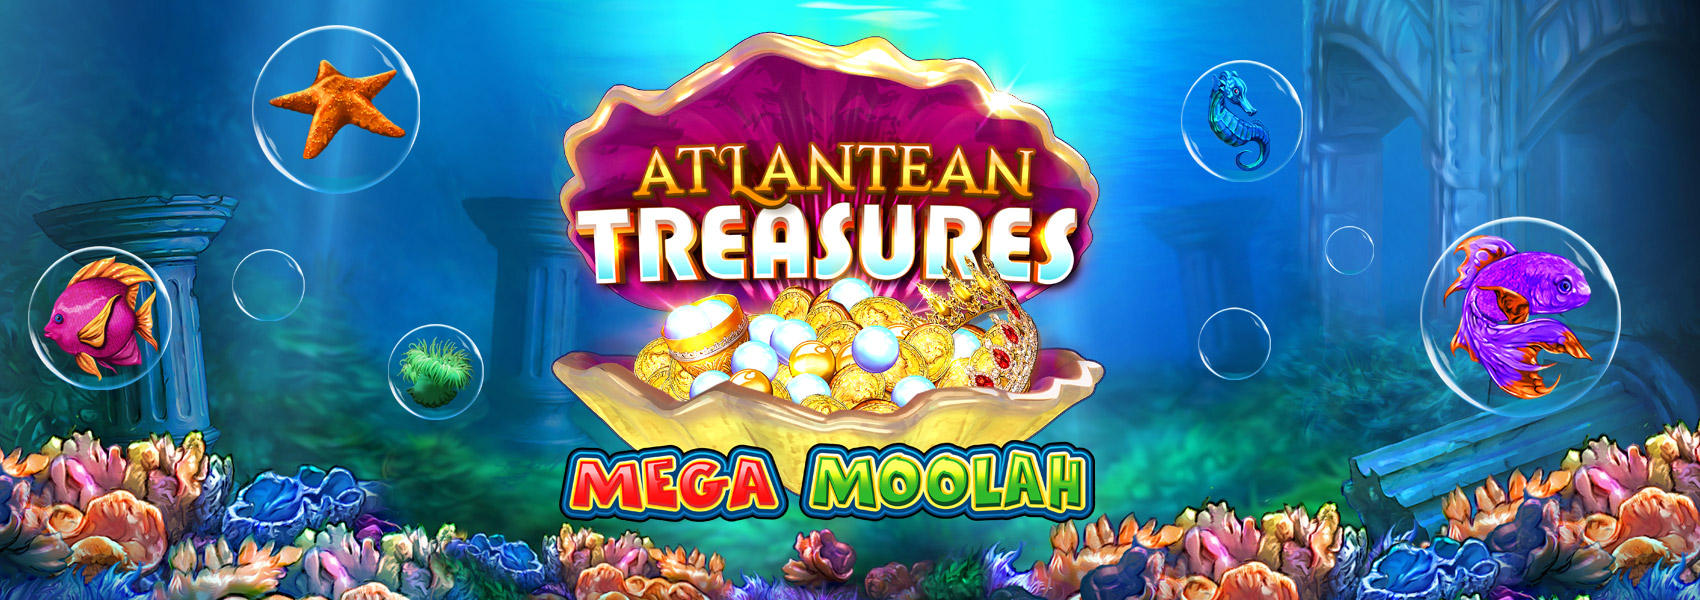 Atlantean Treasures: Mega Moolah Banner